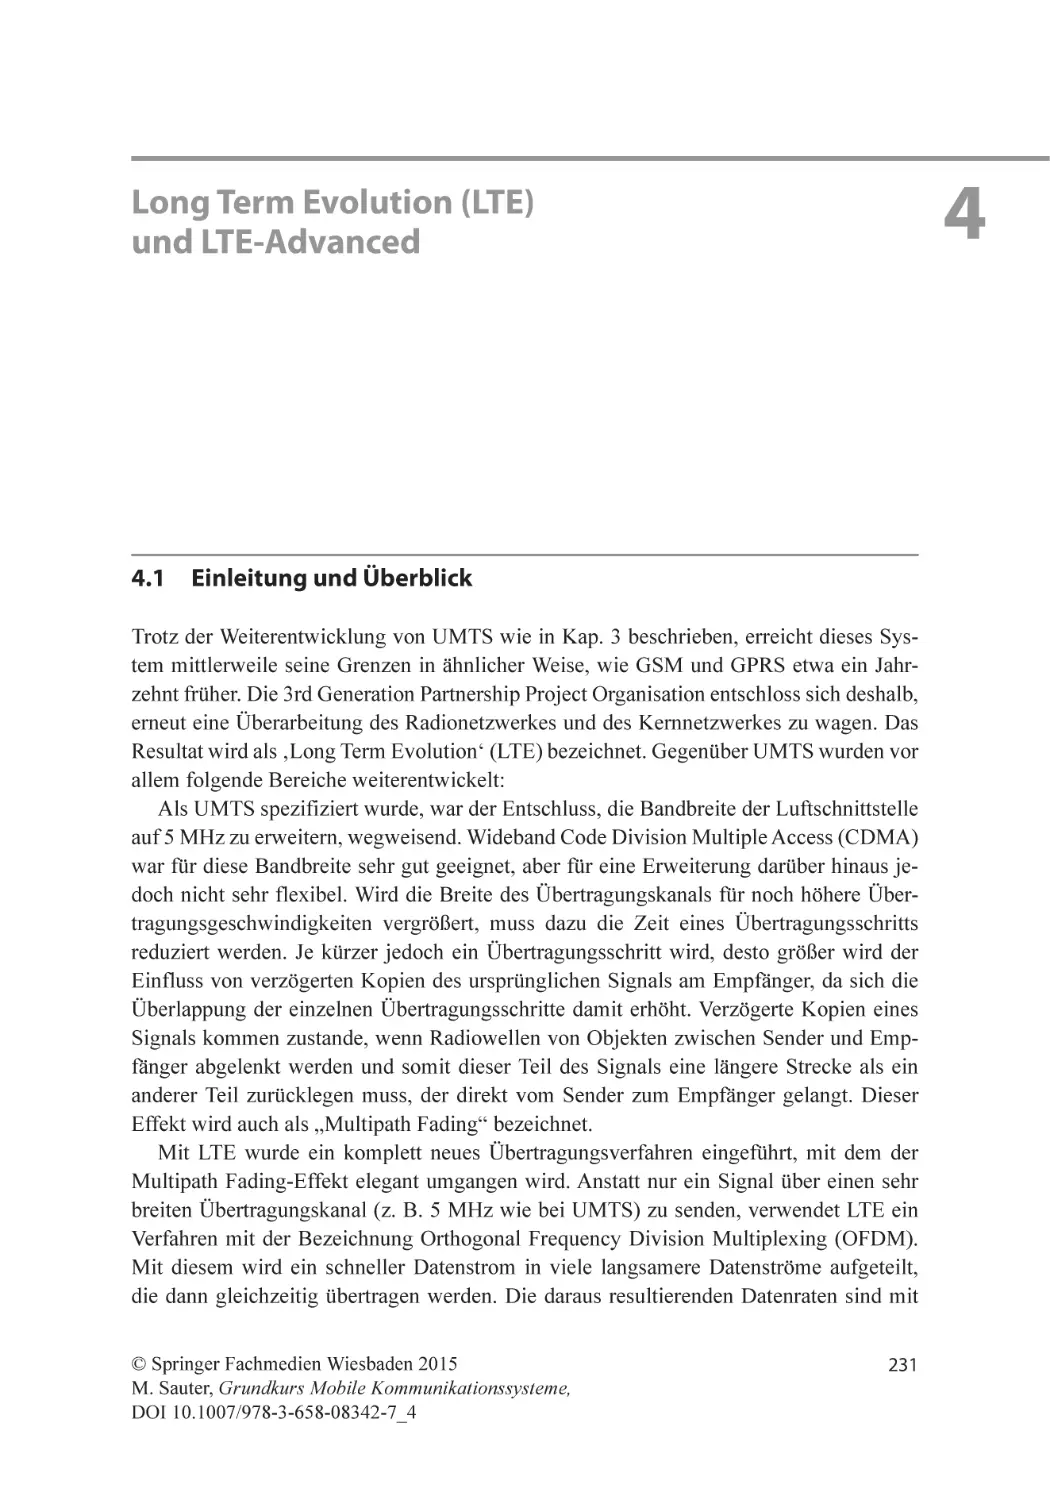 Kapitel 4
Long Term Evolution (LTE) und LTE-Advanced
4.1 Einleitung und Überblick